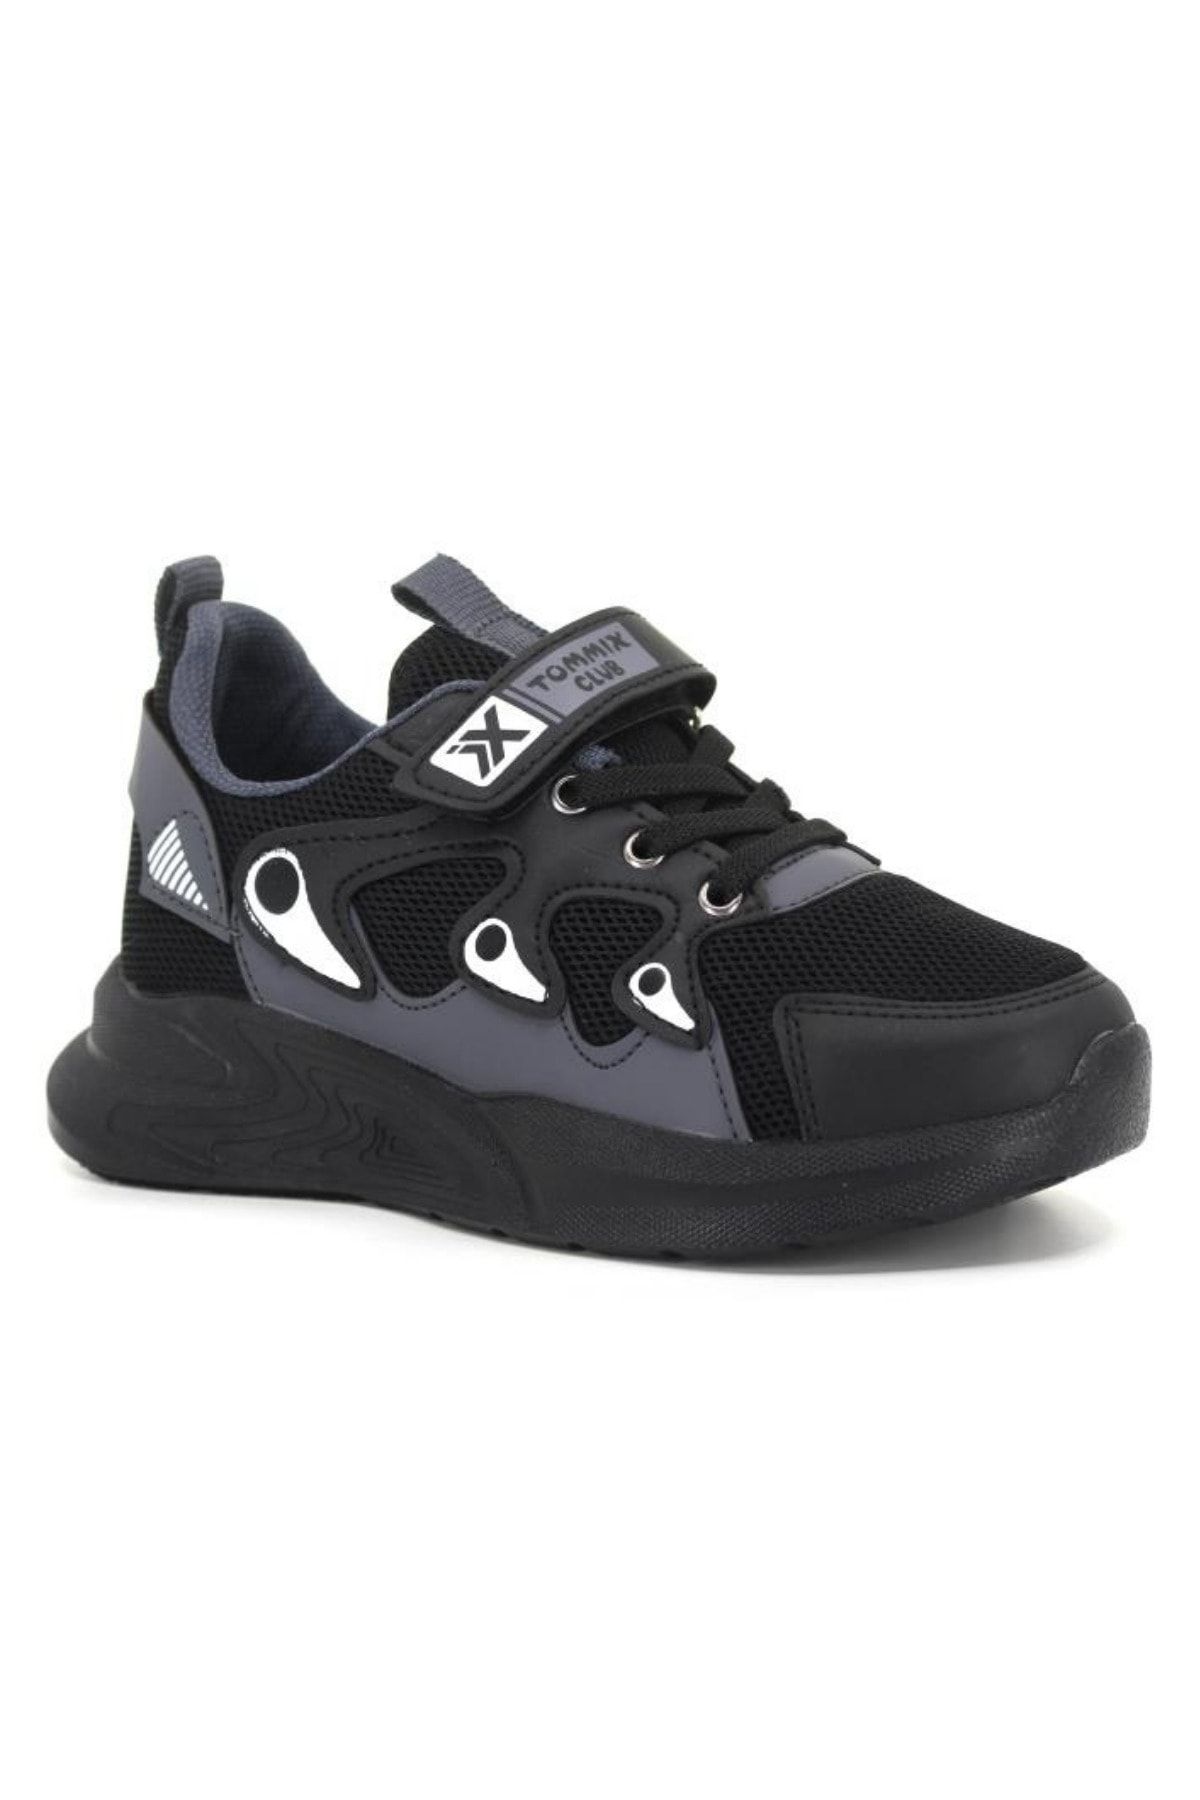 Aleza Shoes Çocuk Spor Ayakkabısı